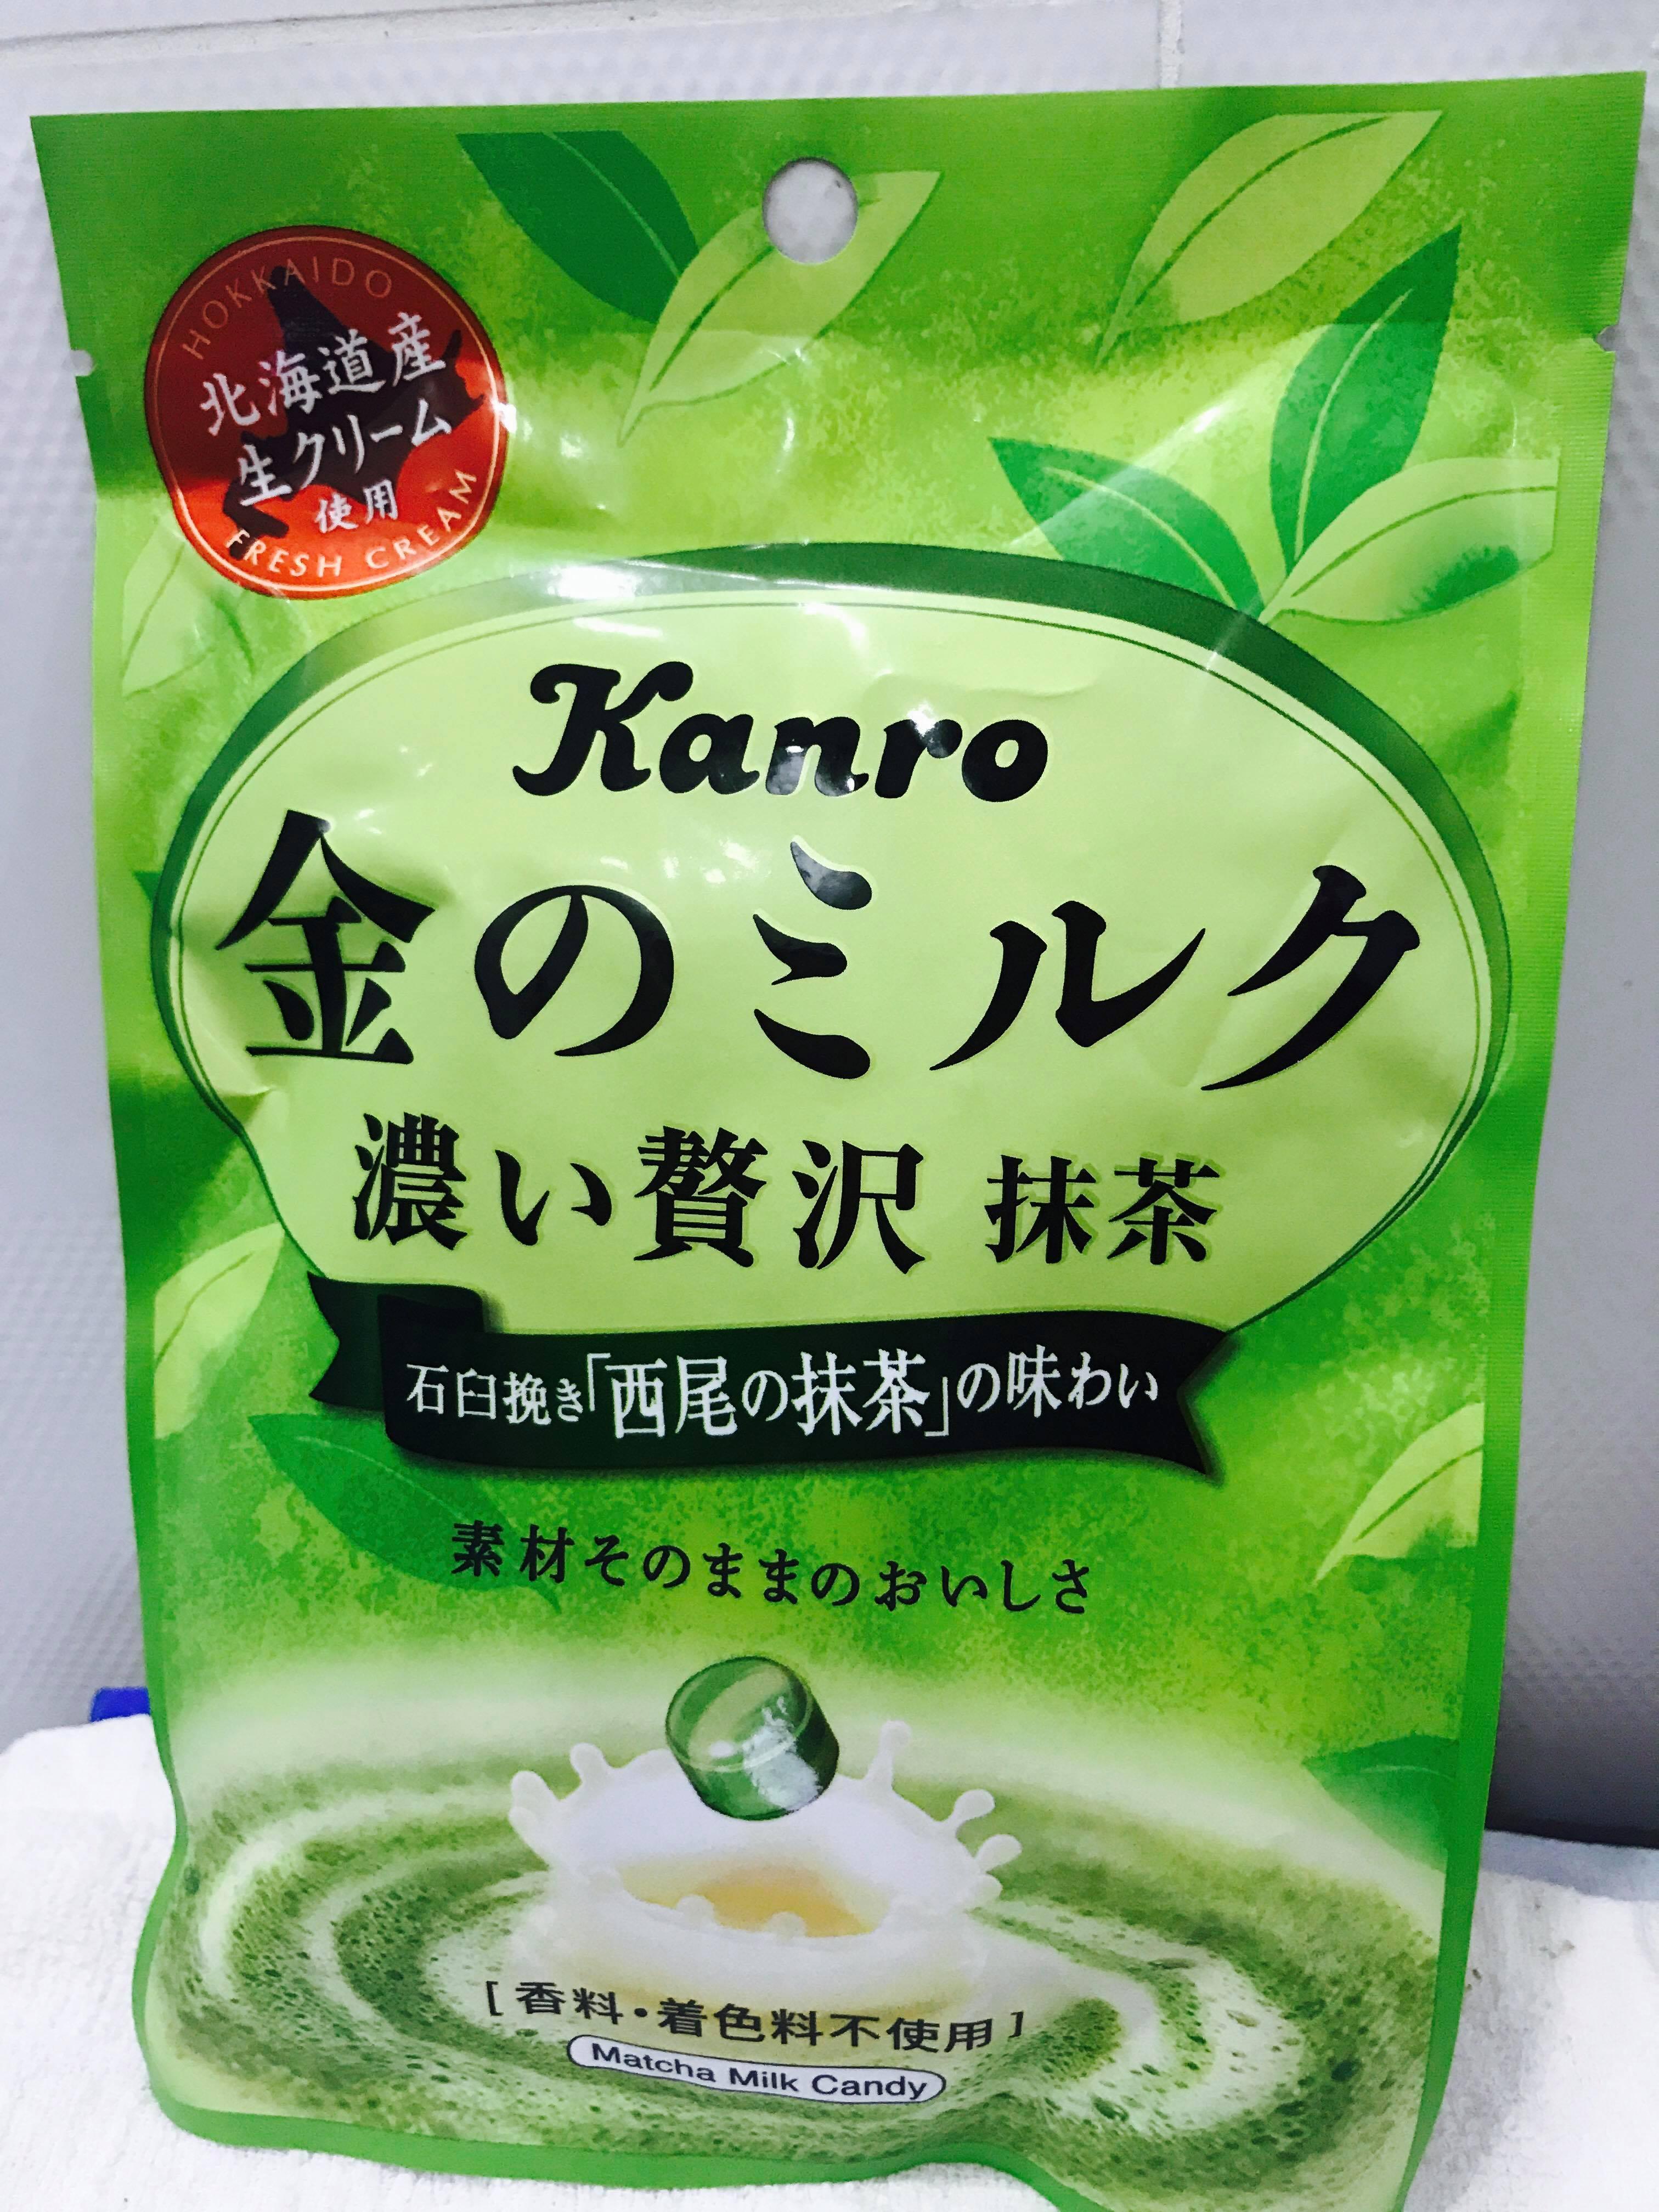 fuji169 Kẹo sữa trà xanh MATCHA Nhật Bản KANRO